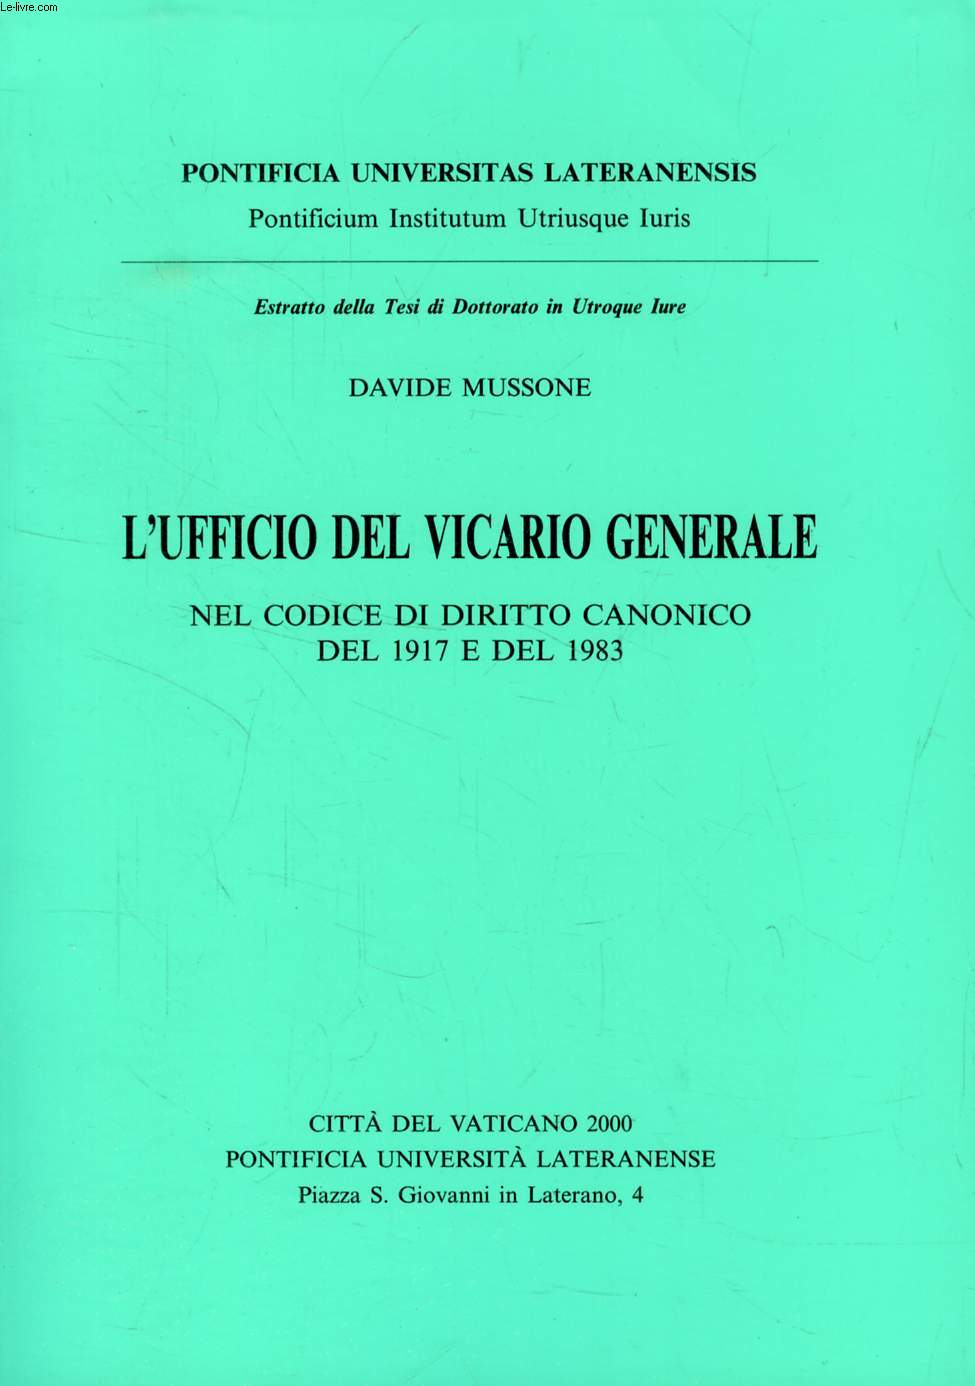 L'UFFICIO DEL VICARIO GENERALE NEL CODICE DI DIRITTO CANONICO DEL 1917 E DEL 1983 (ESTRATTO DELLA TESI)